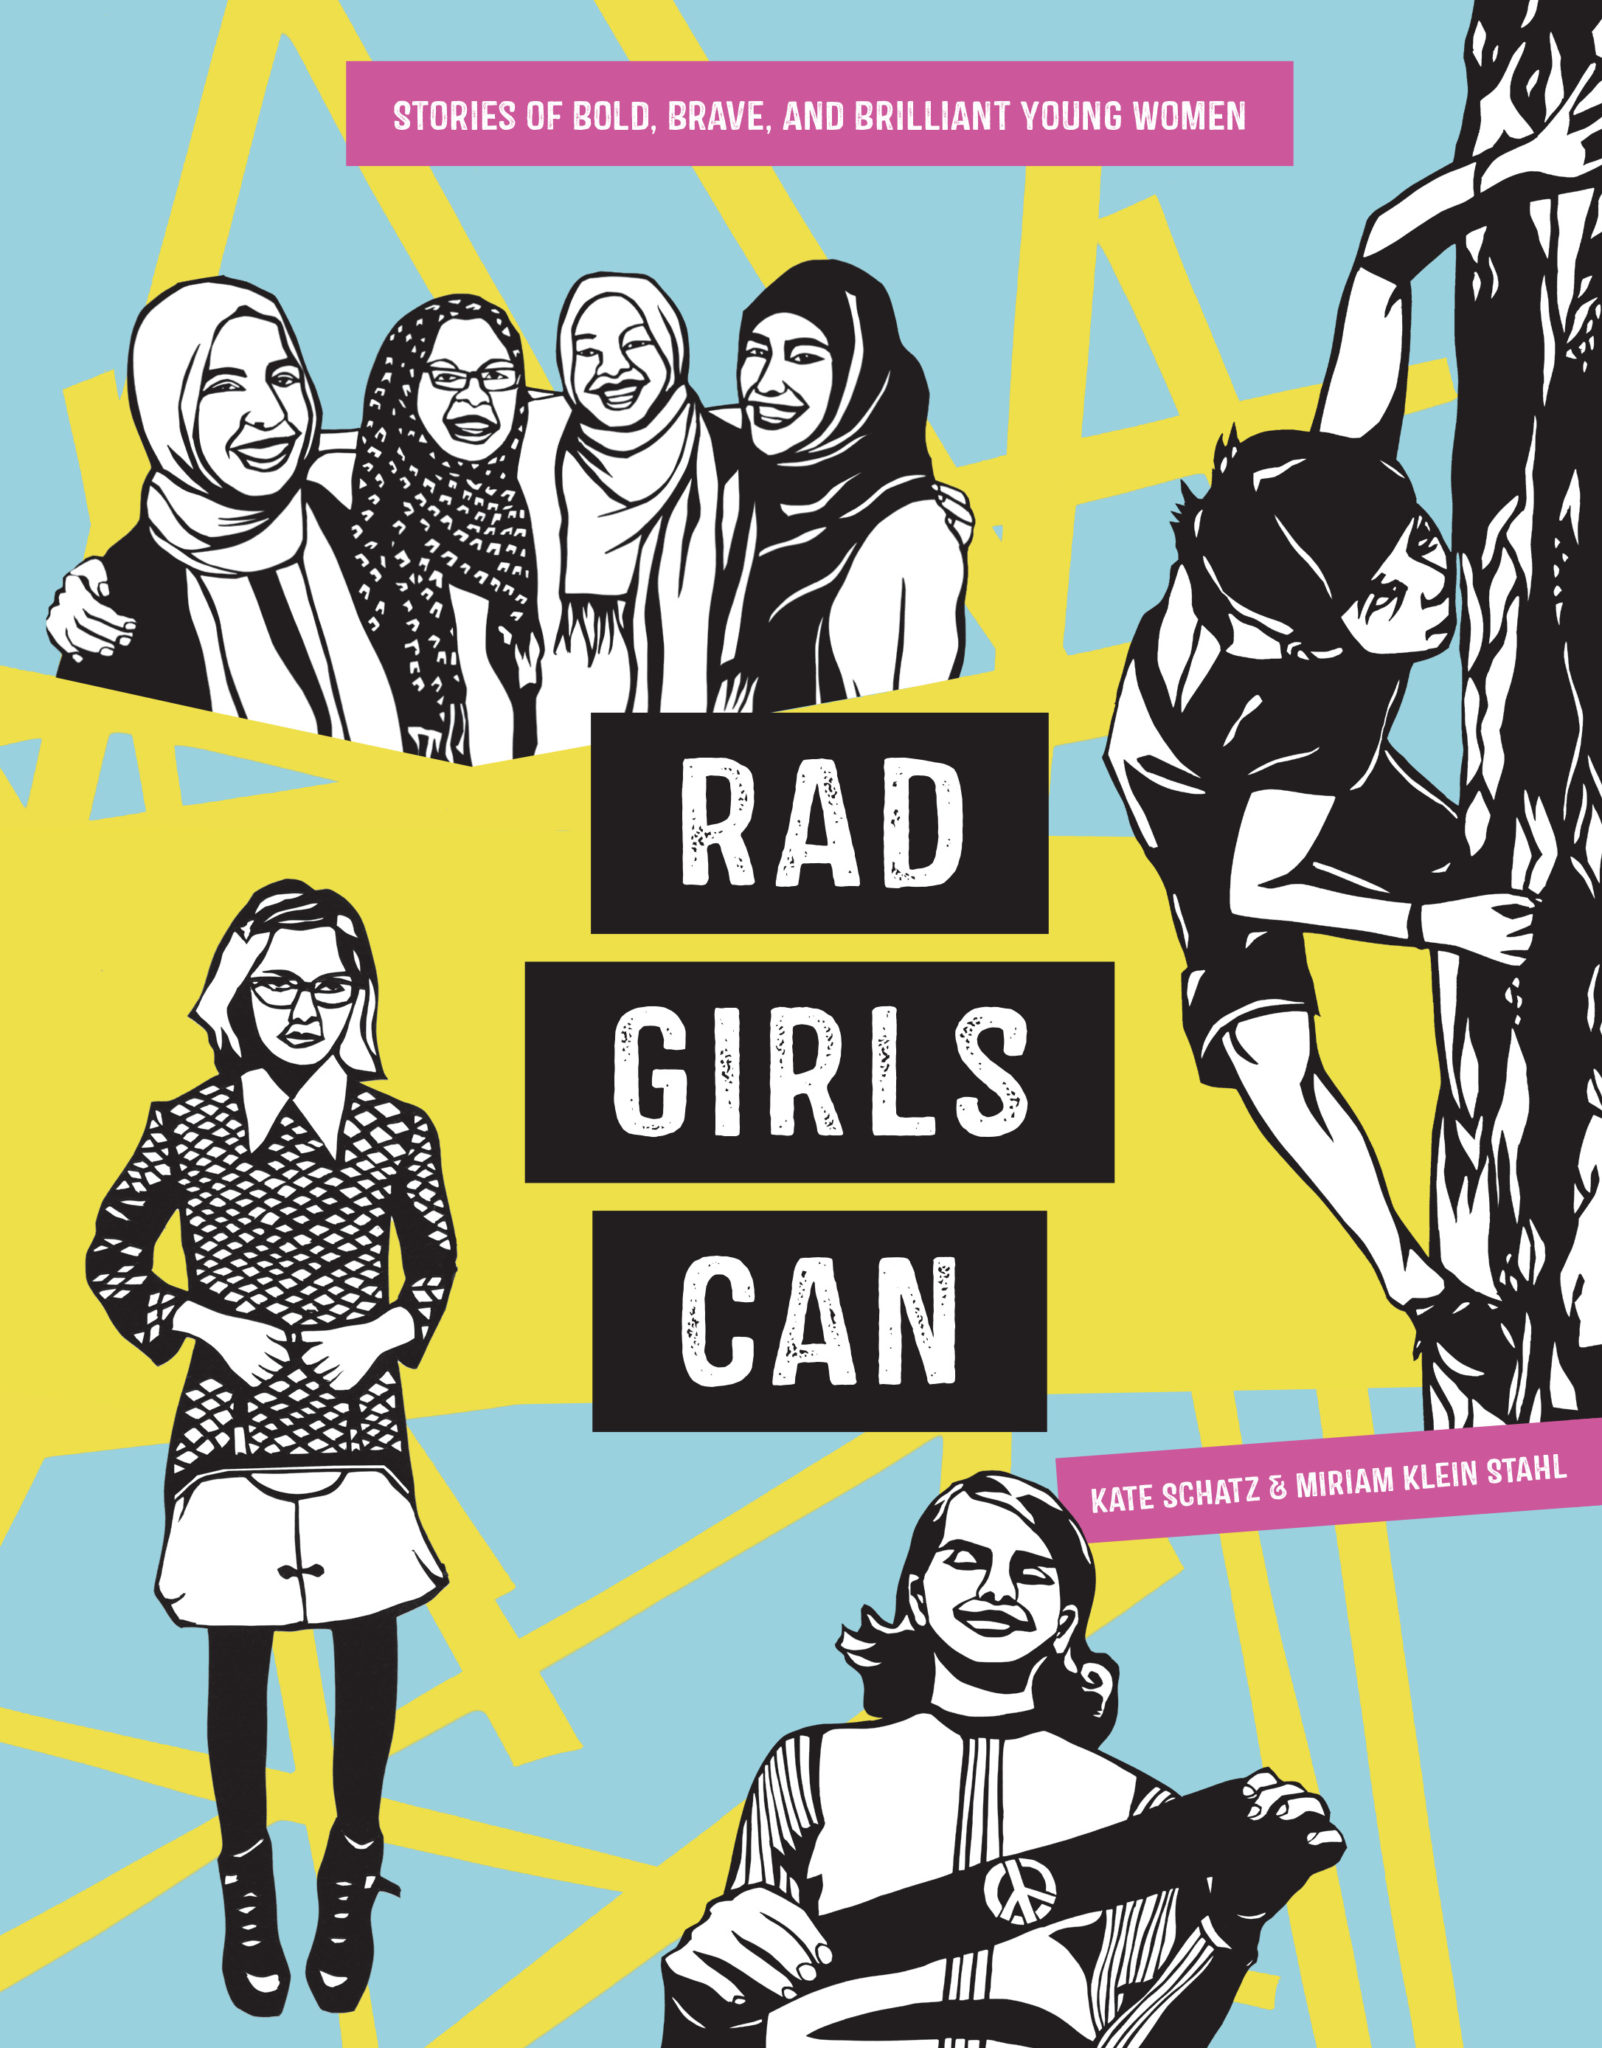 Rad Girls Can by Kate Schatz